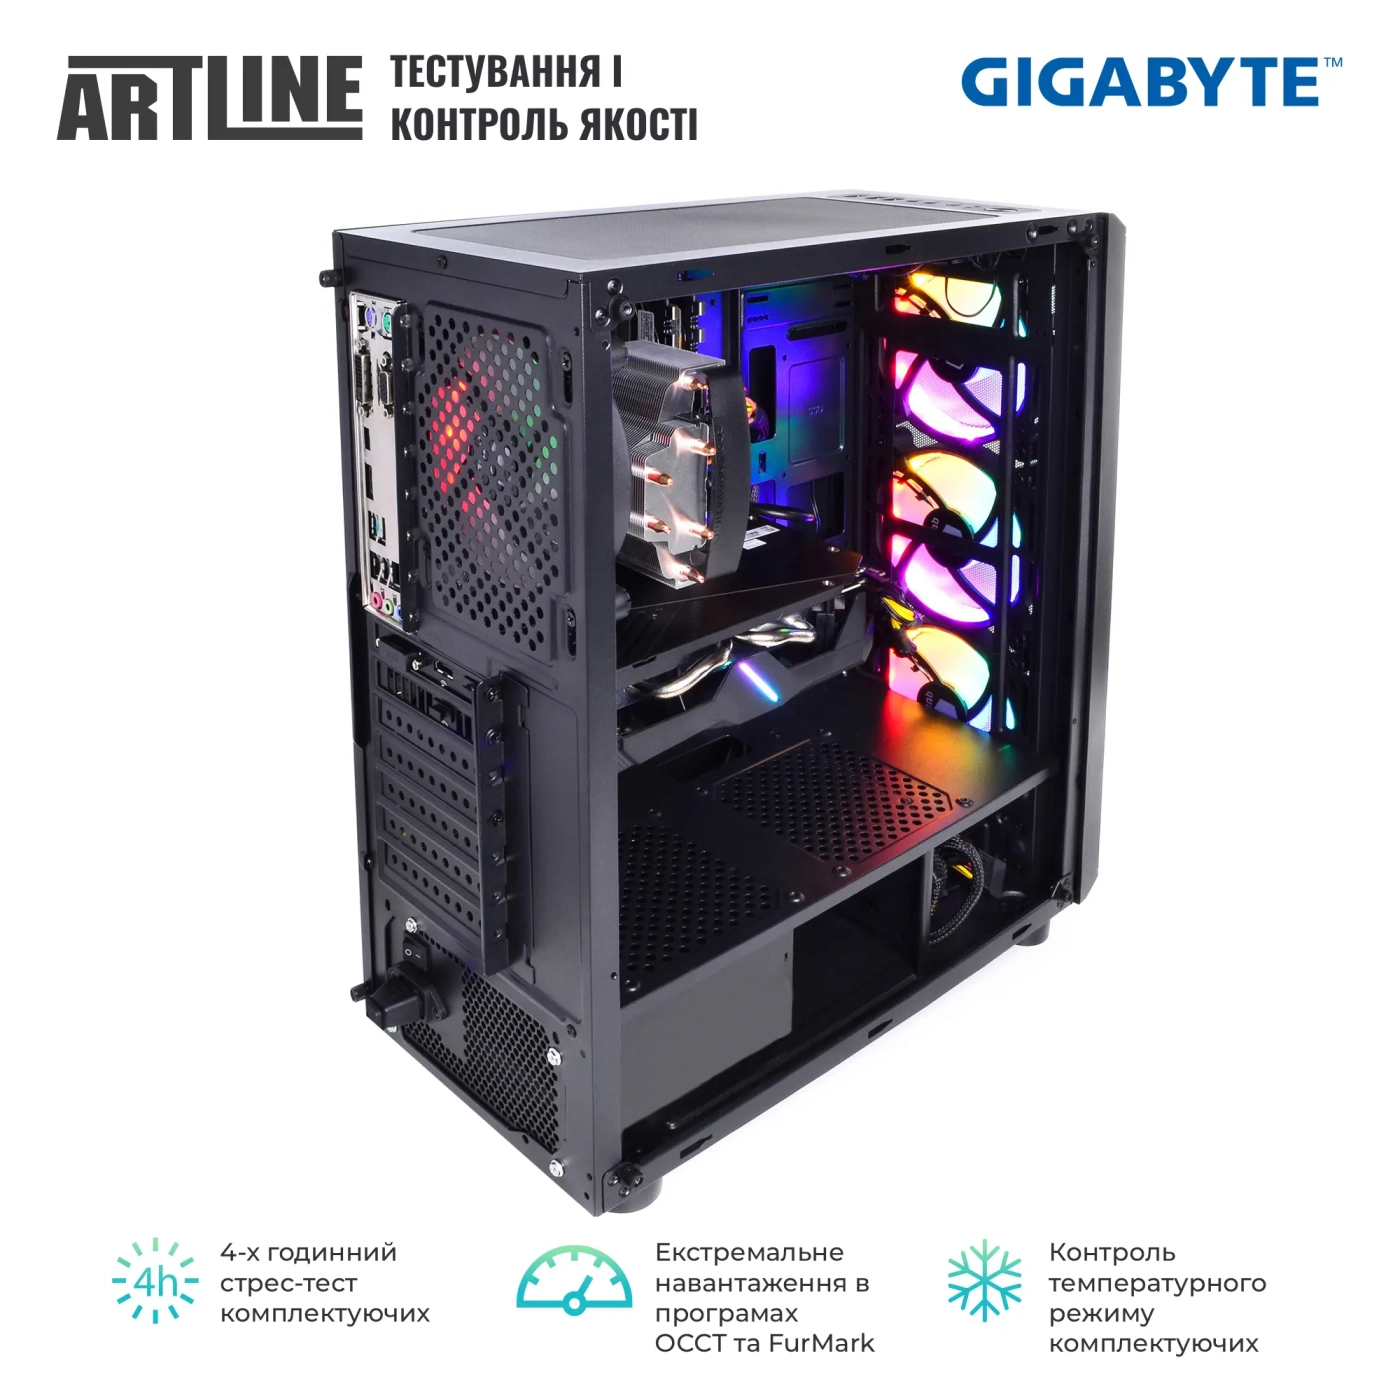 Купить Компьютер ARTLINE Gaming X49v17GGB GIGABYTE Special Edition (X49v17GGB) - фото 9